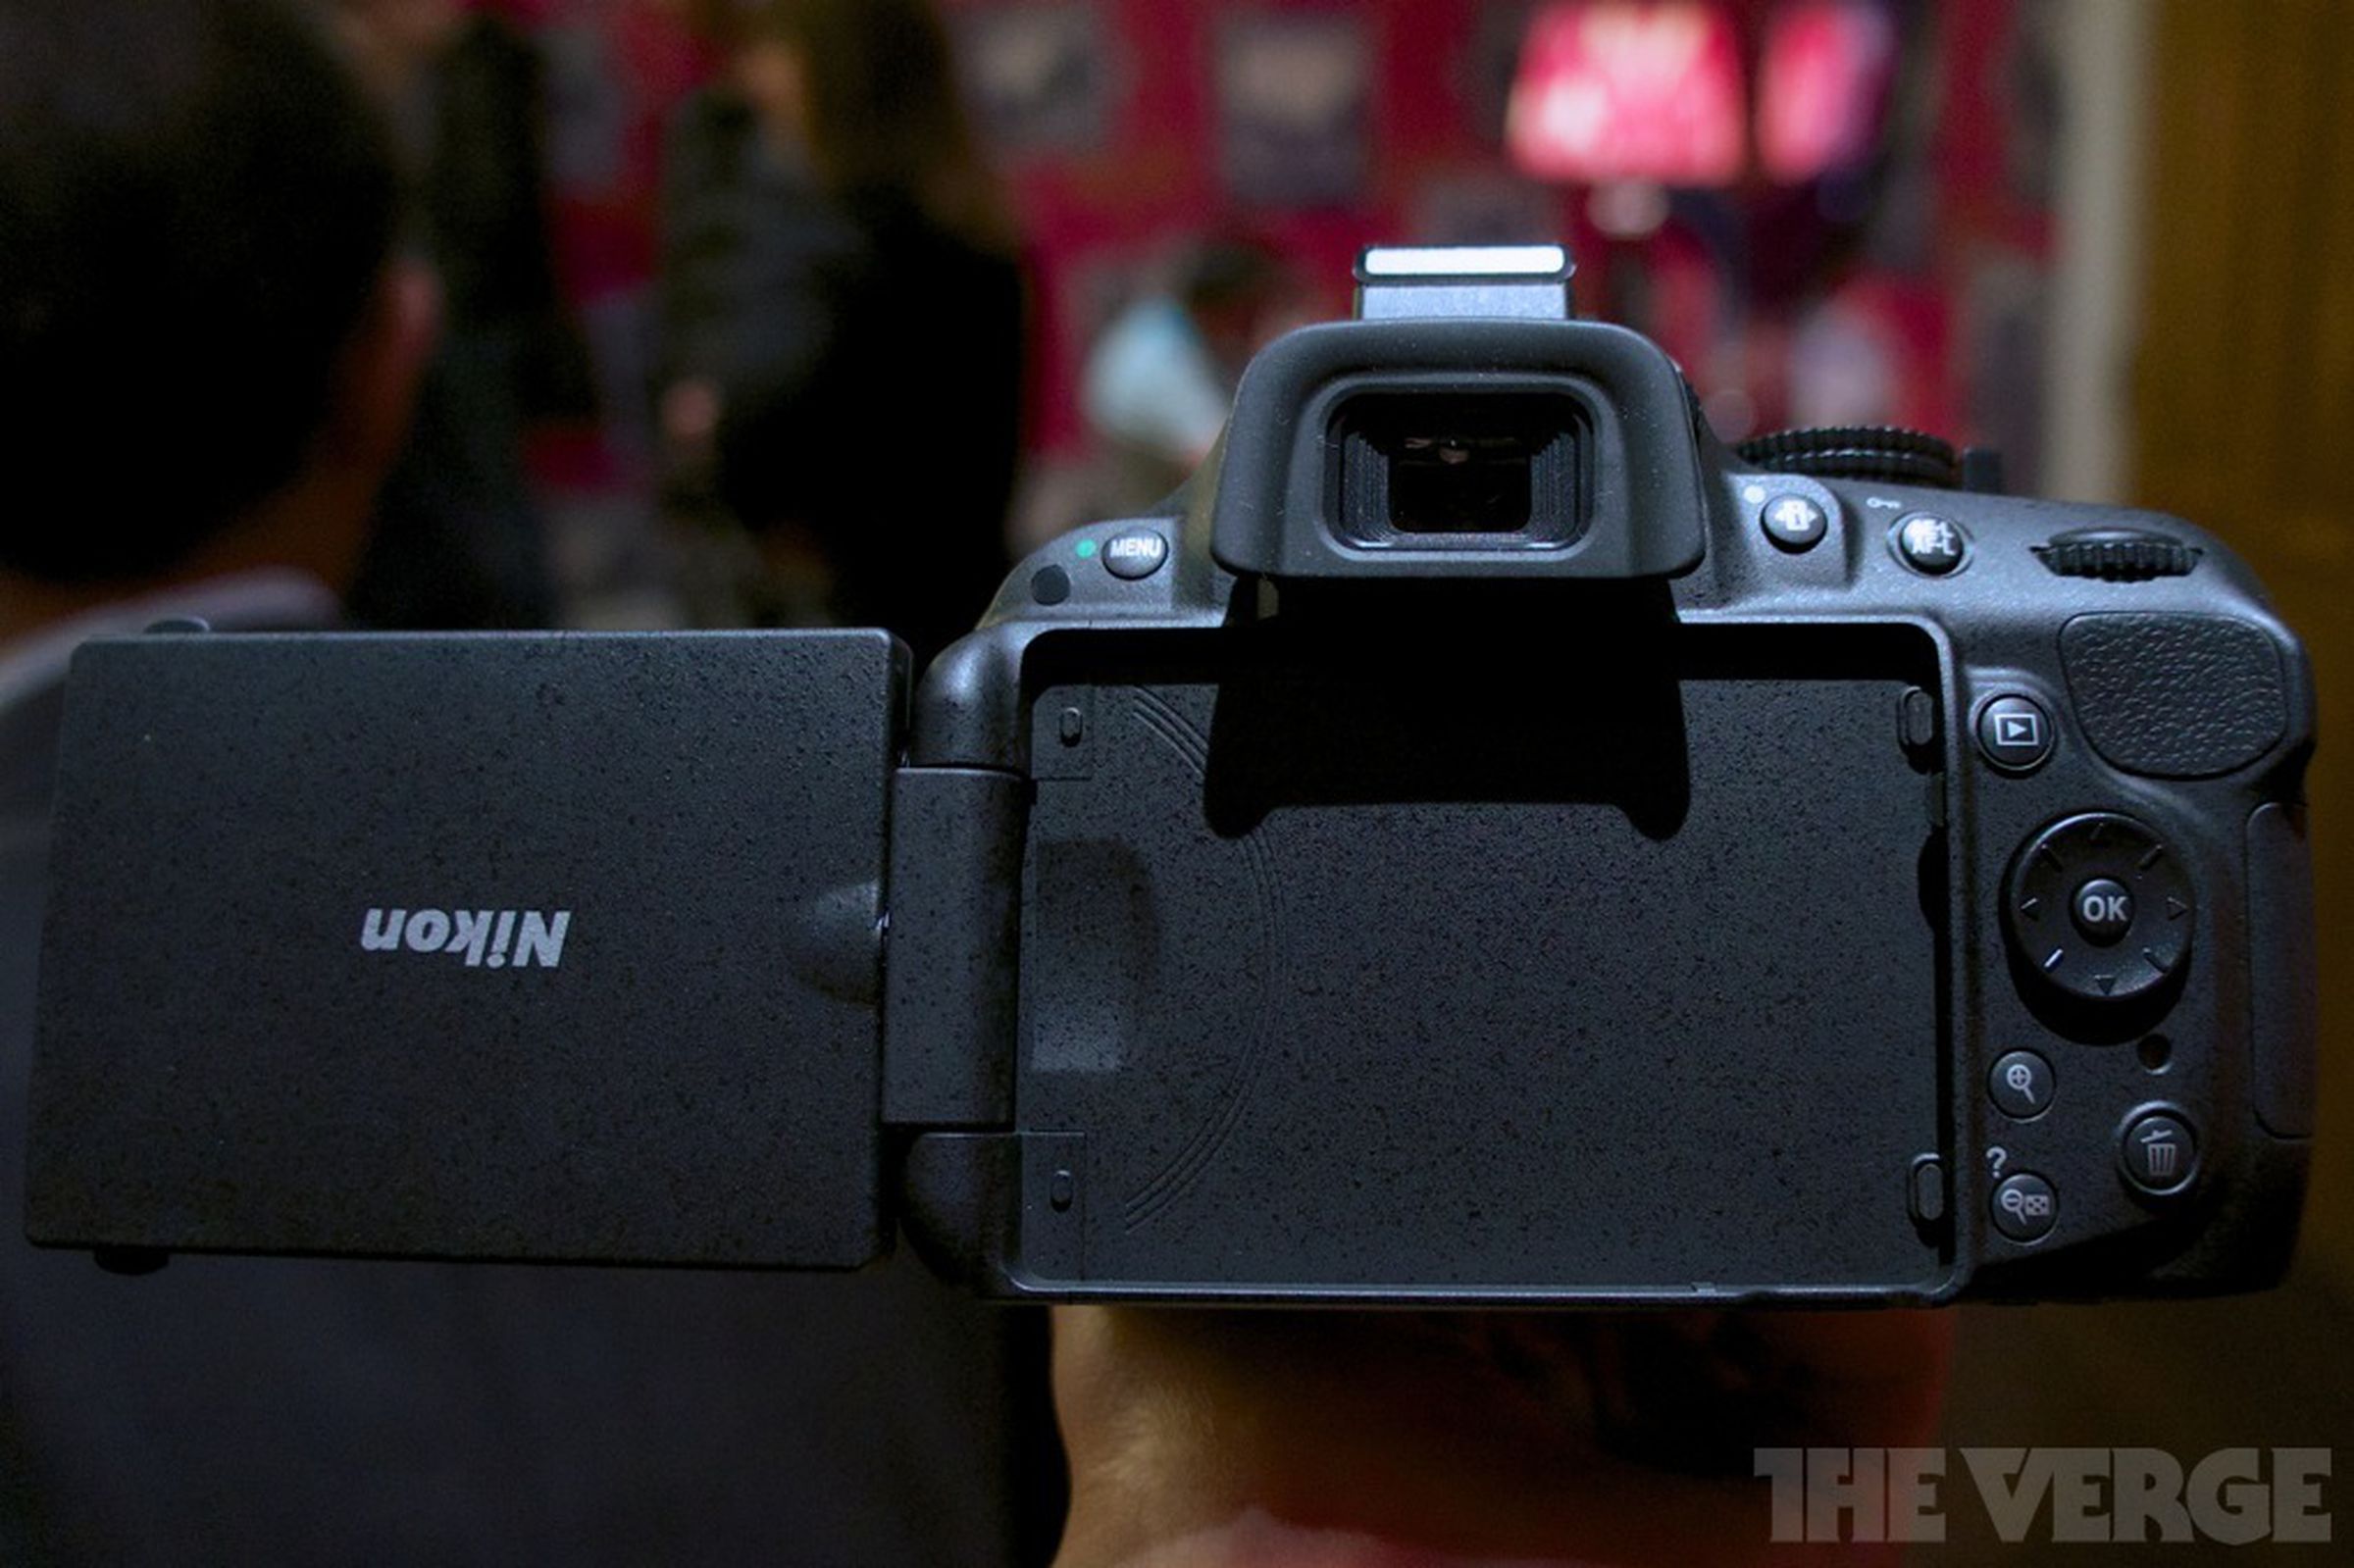 Nikon D5200 hands-on photos